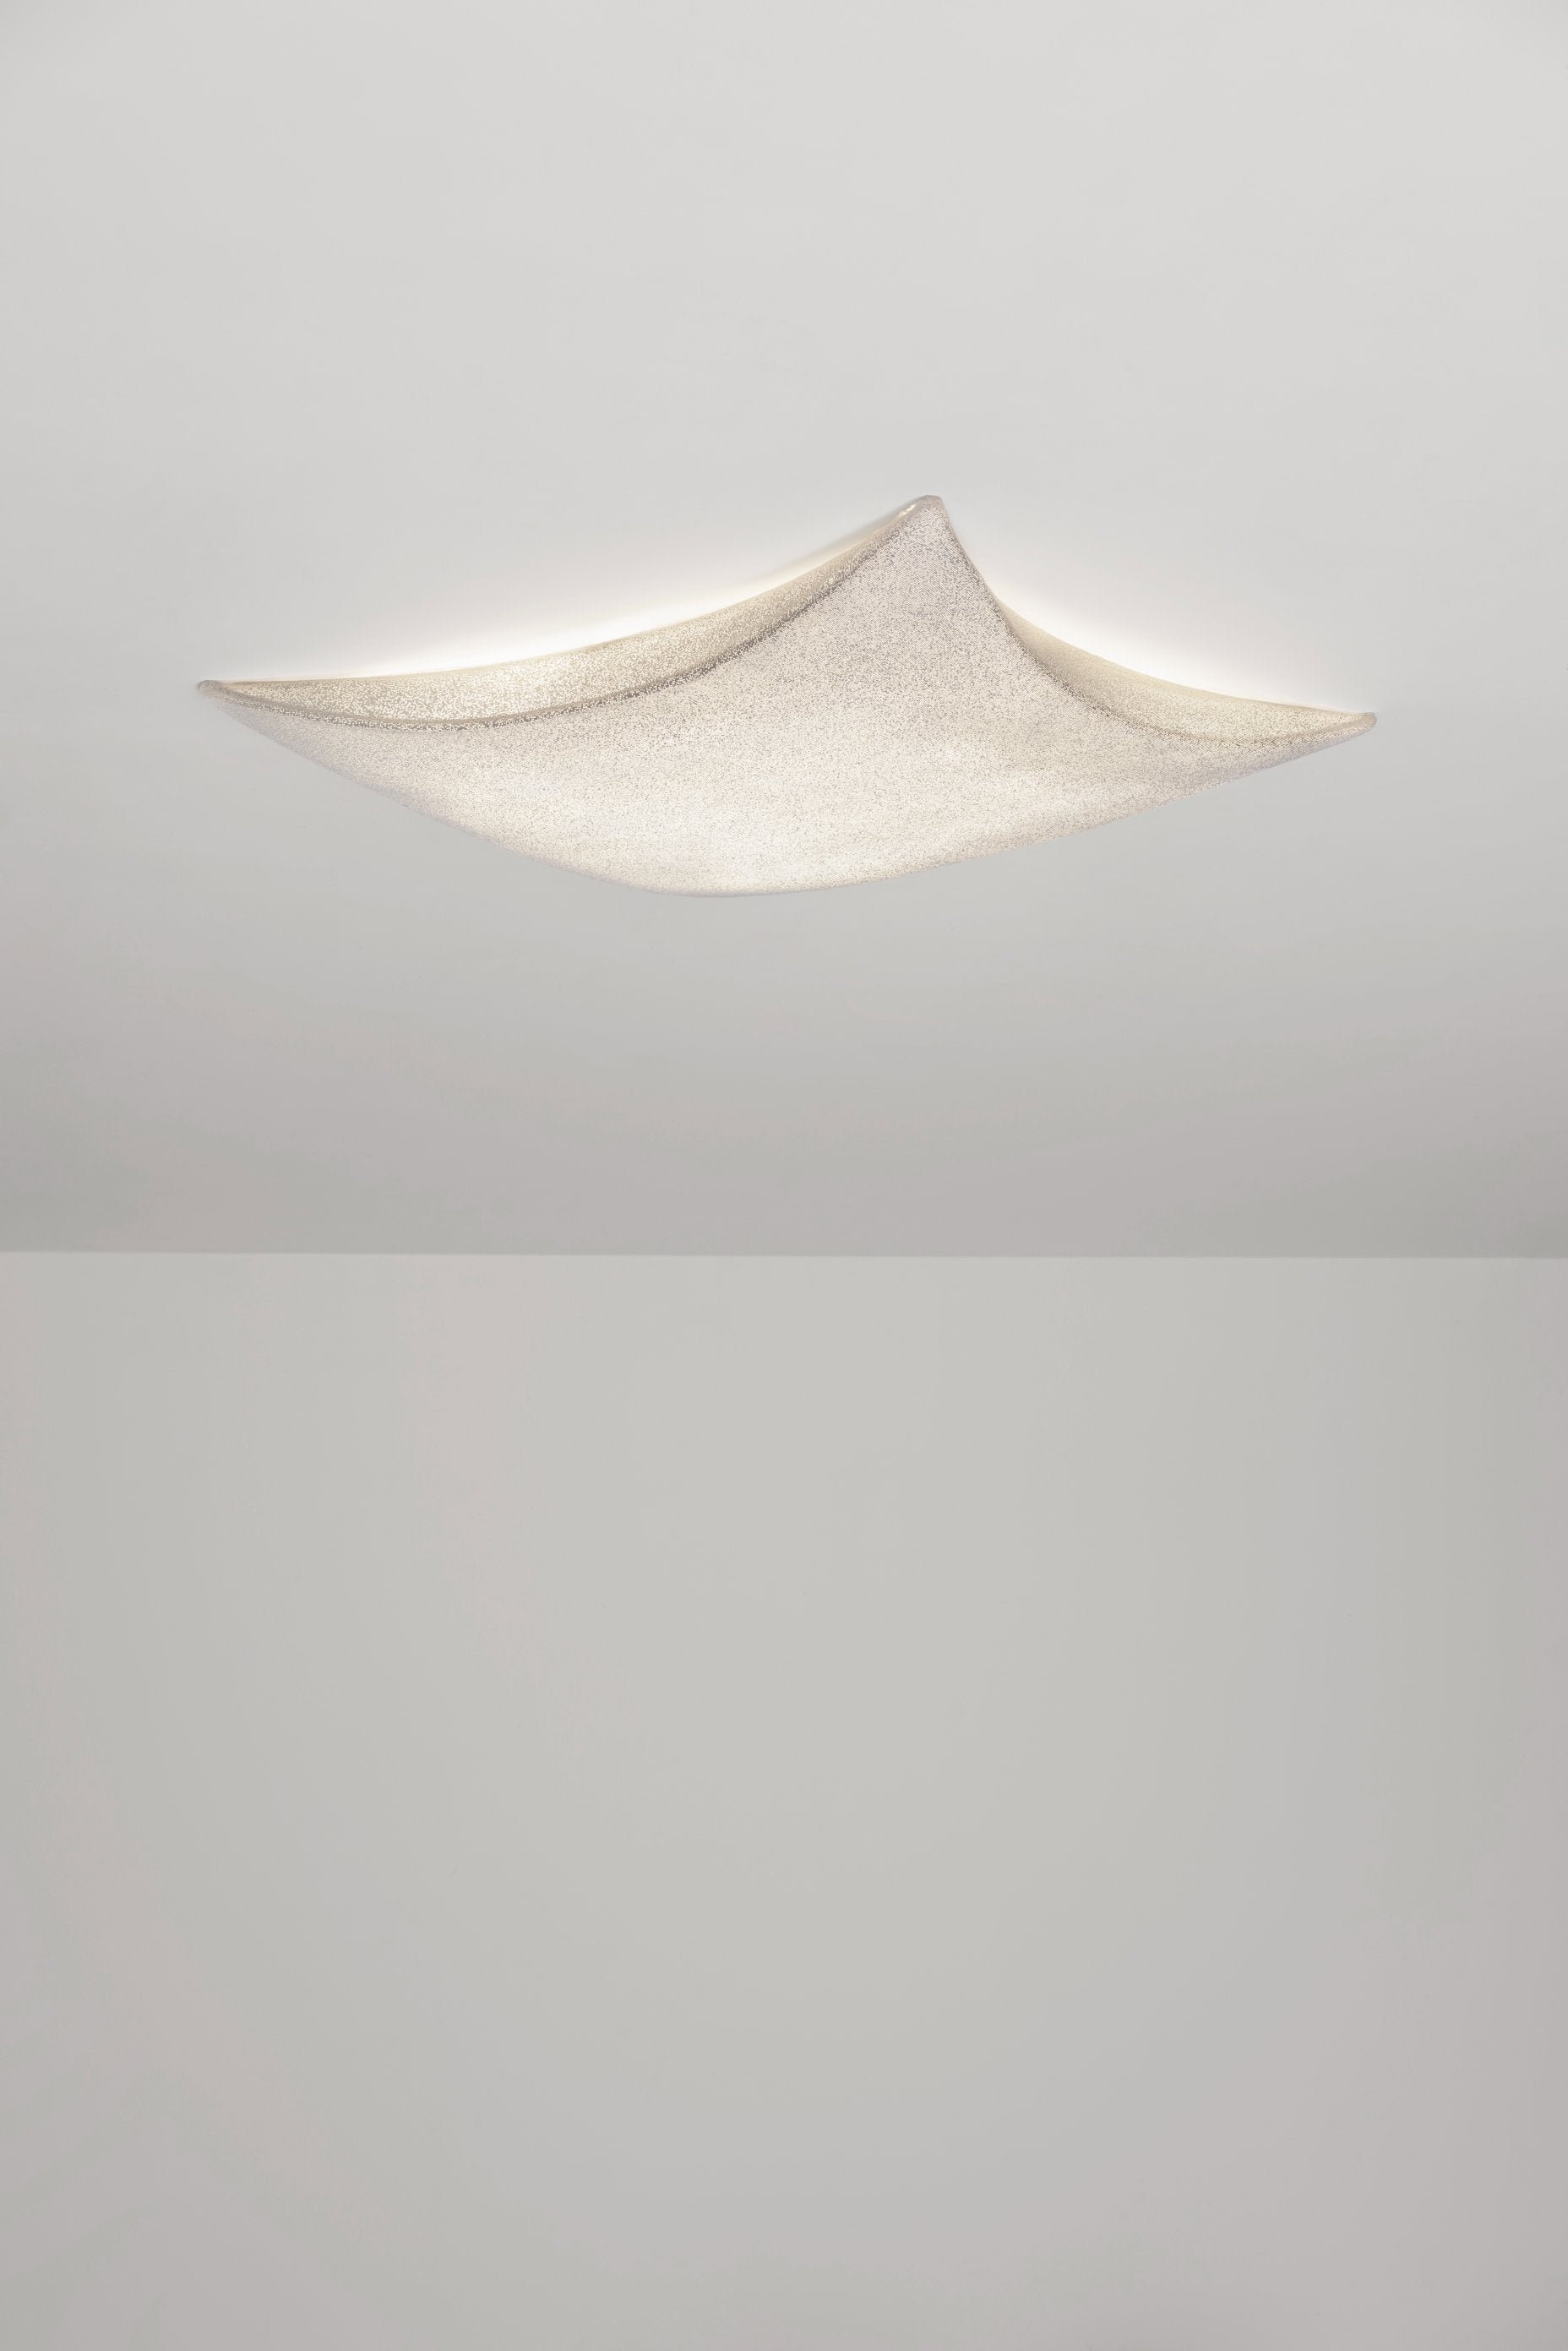 KITE G - Griestu / Sienas Lampa